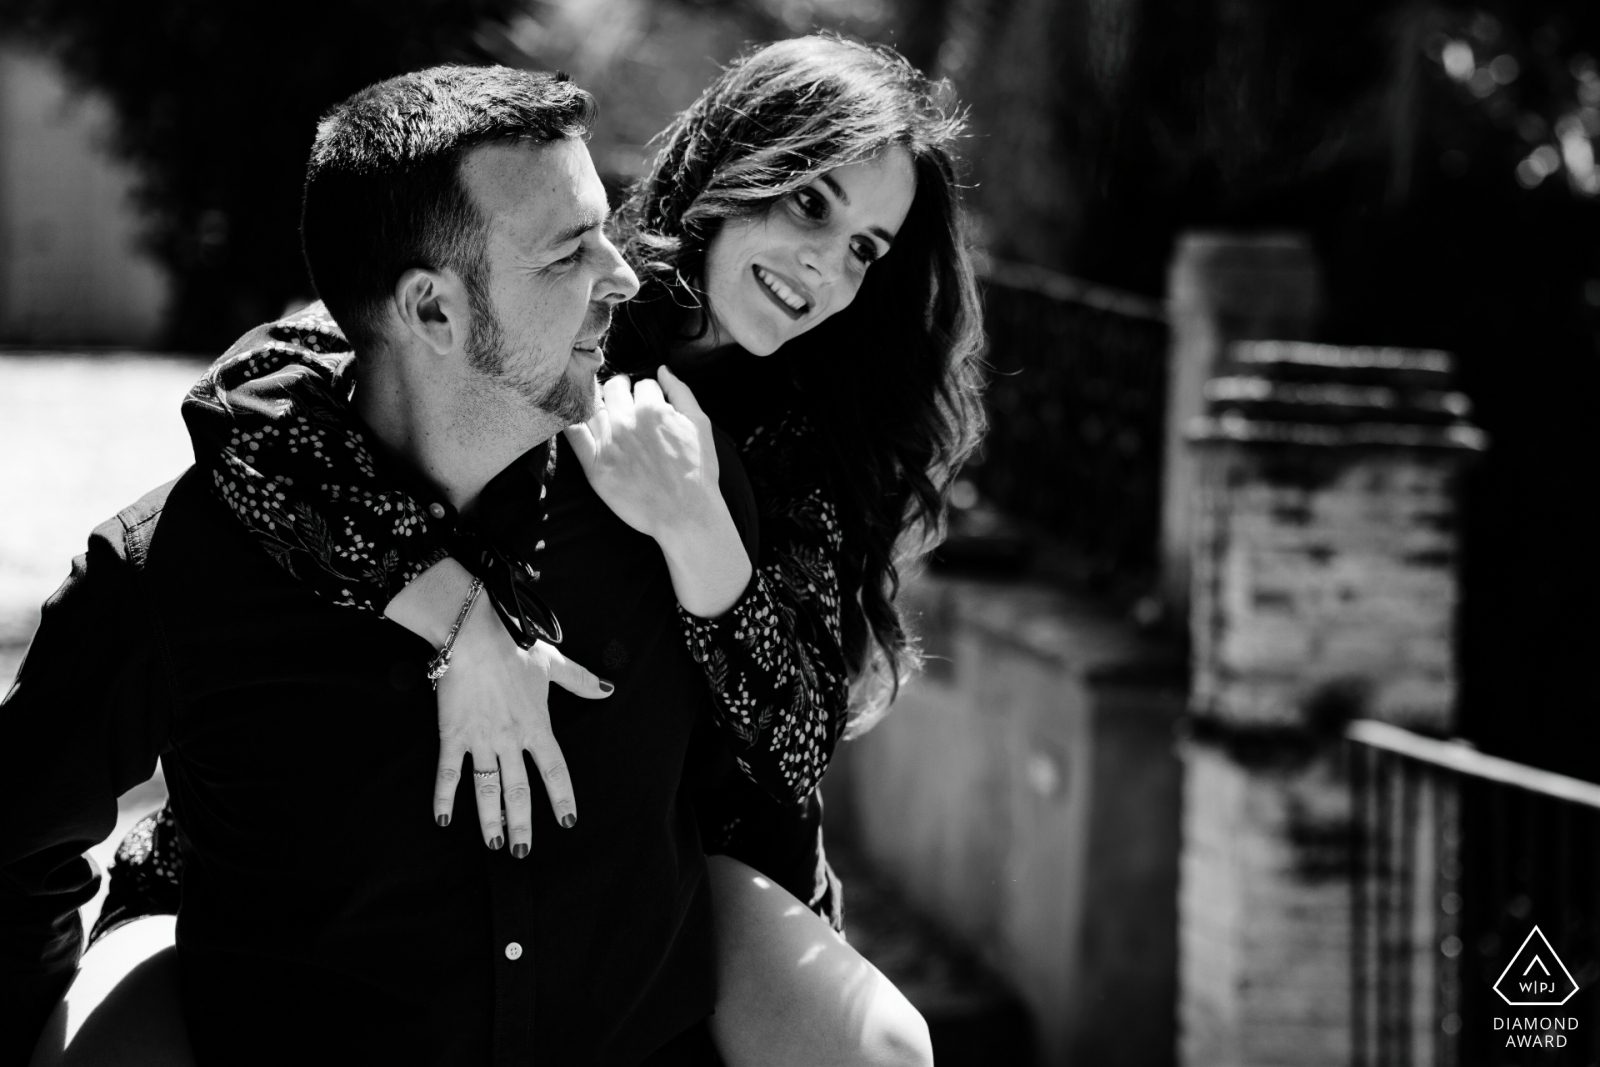 Fotografía en blanco y negro de una pareja sonriente